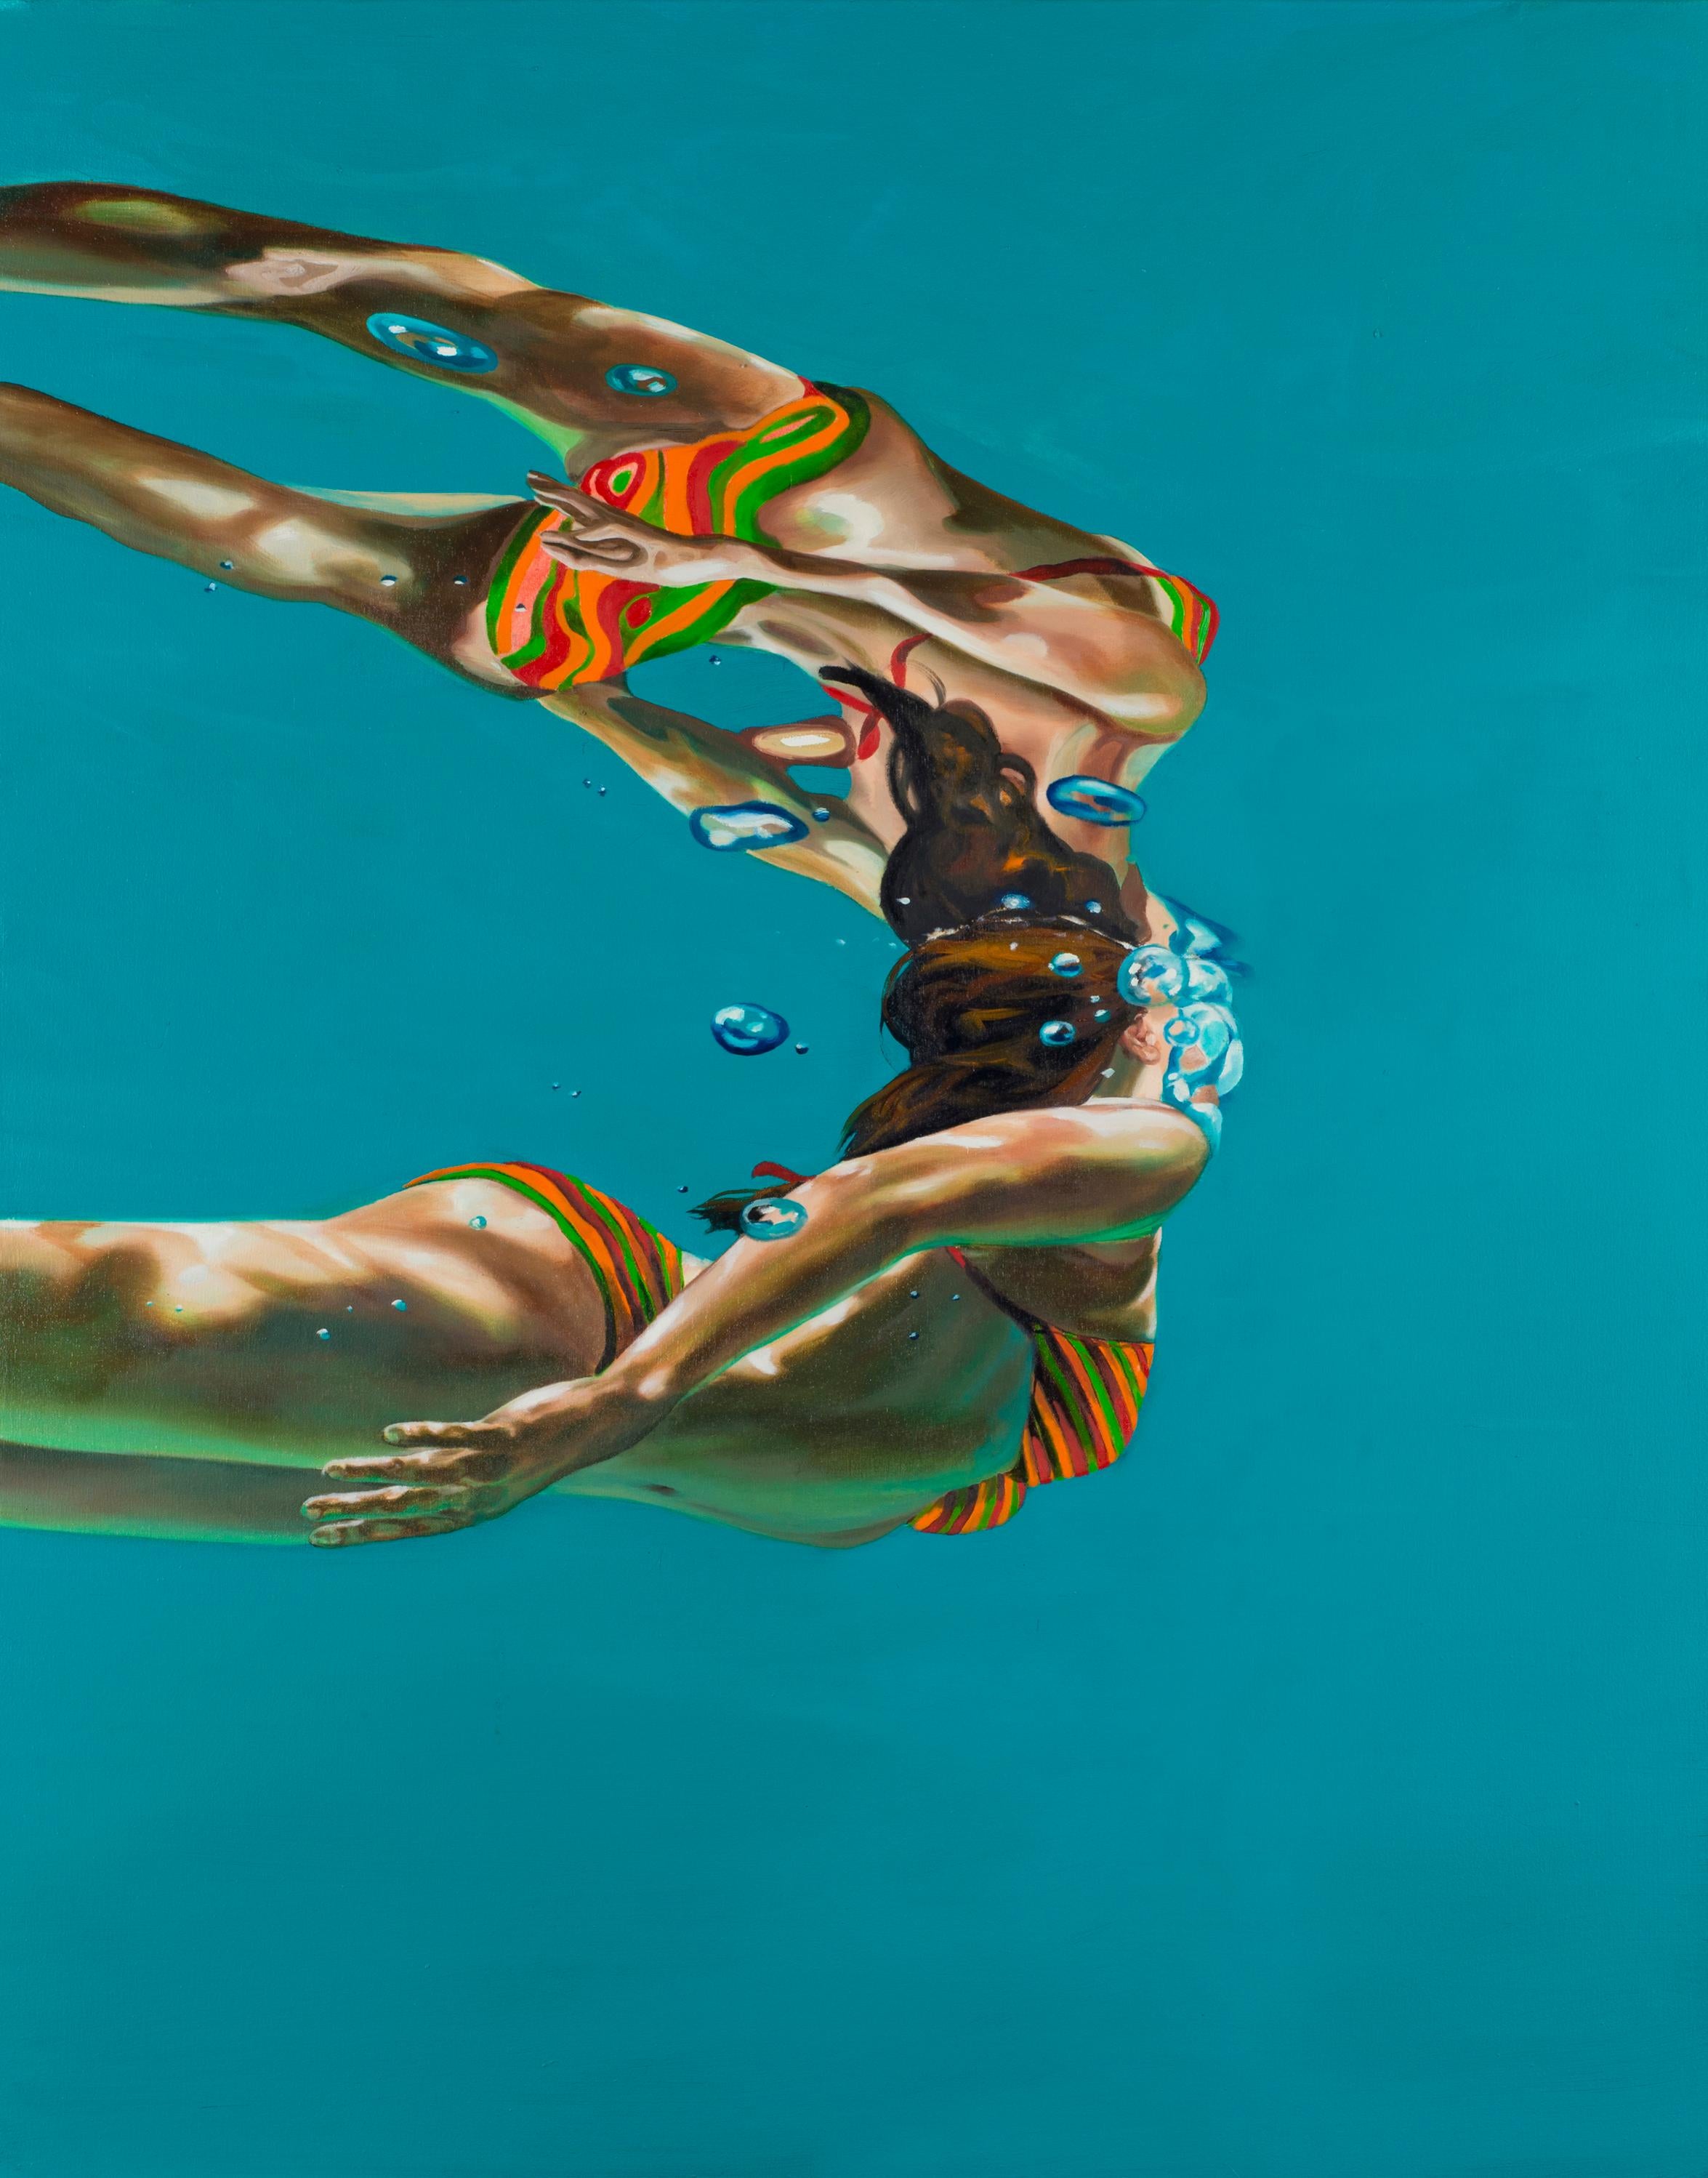 REJOINING AGAIN II, photo-realism, women swimming underwater, orange bikini - Painting by Eric Zener